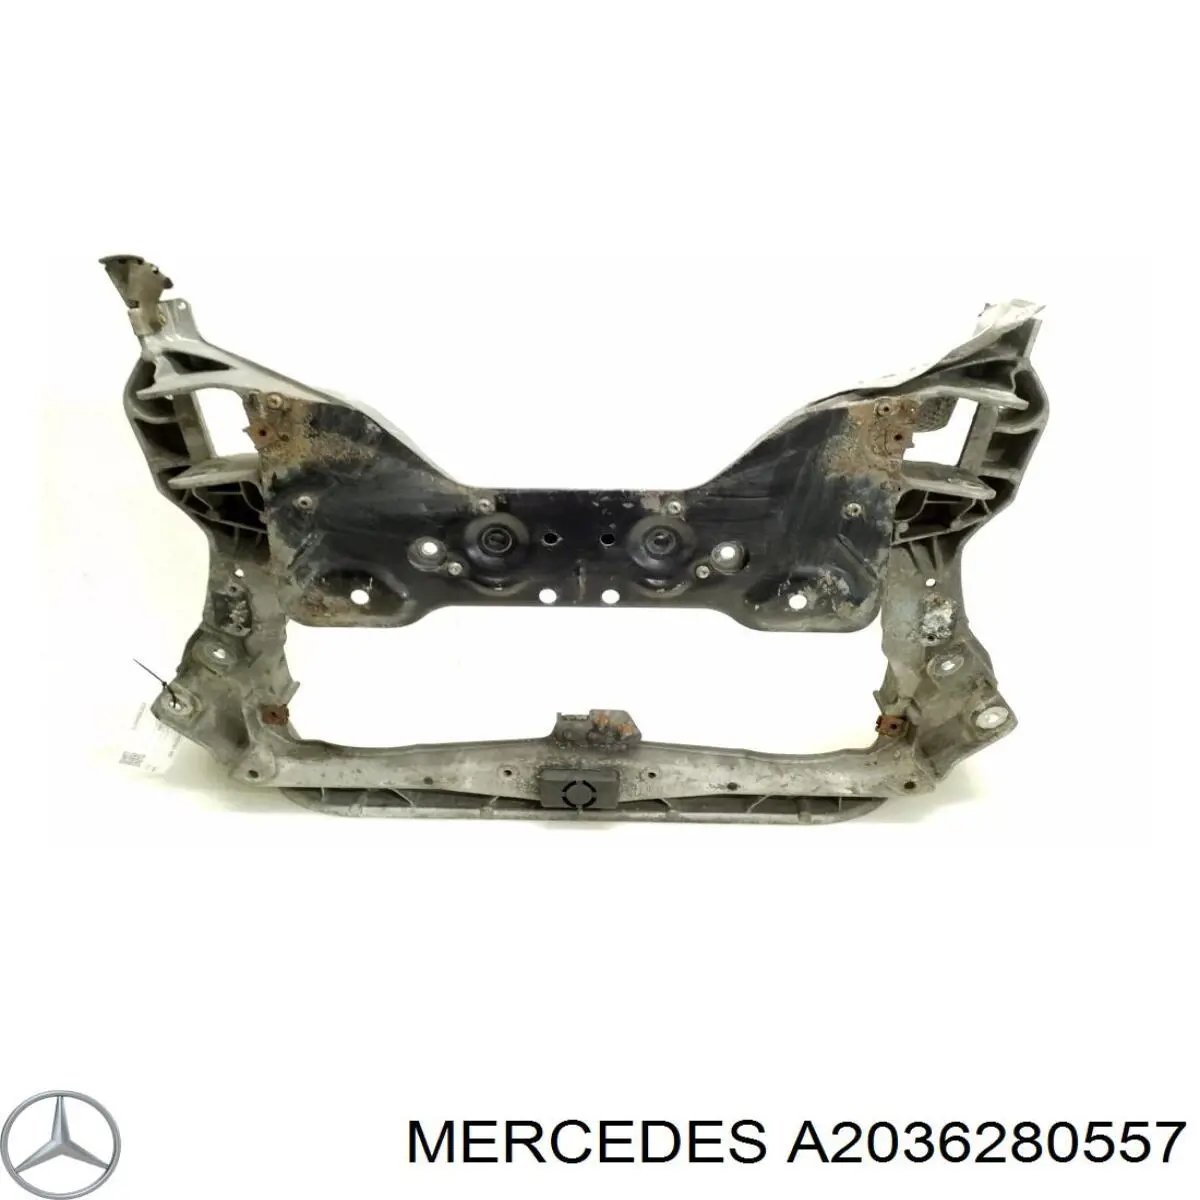 A2036280557 Mercedes viga de suspensão dianteira (plataforma veicular)